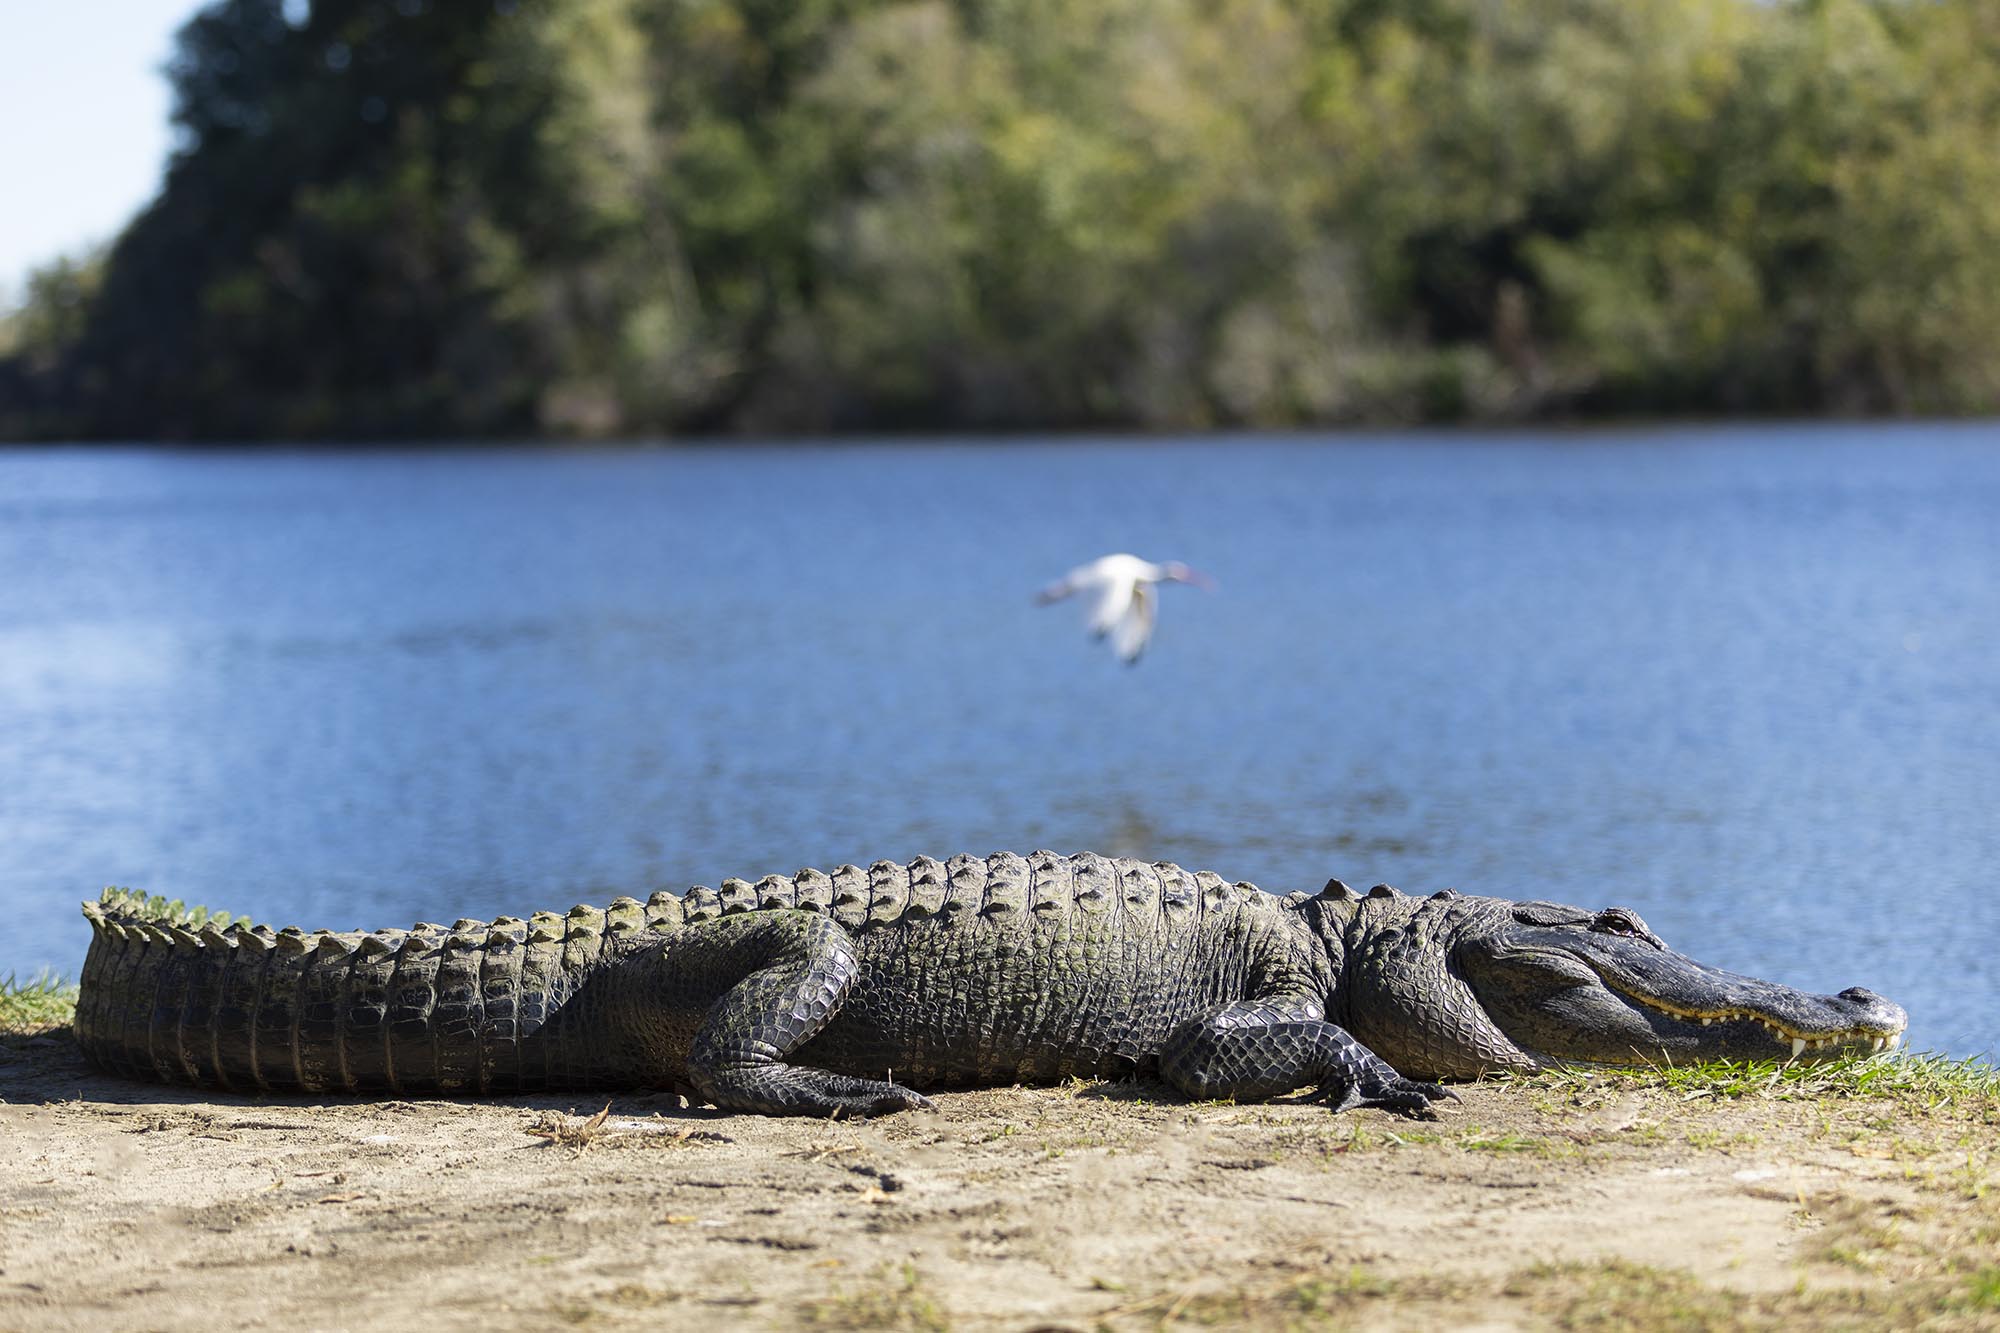 an alligator sunning itself on a lakeshore 